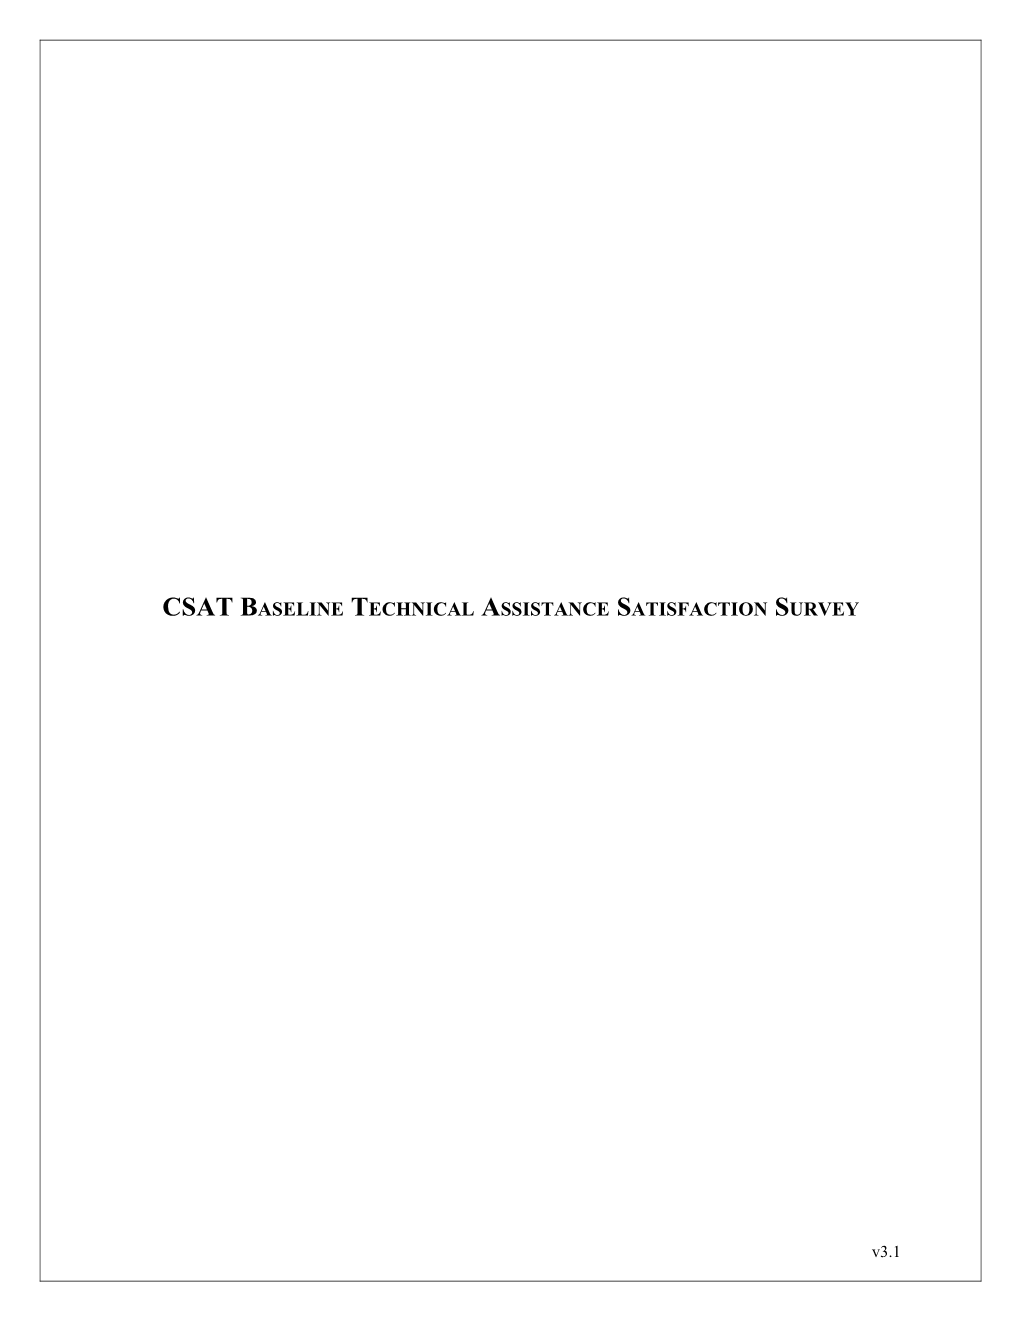 CSAT Baseline Technical Assistance Satisfaction Survey